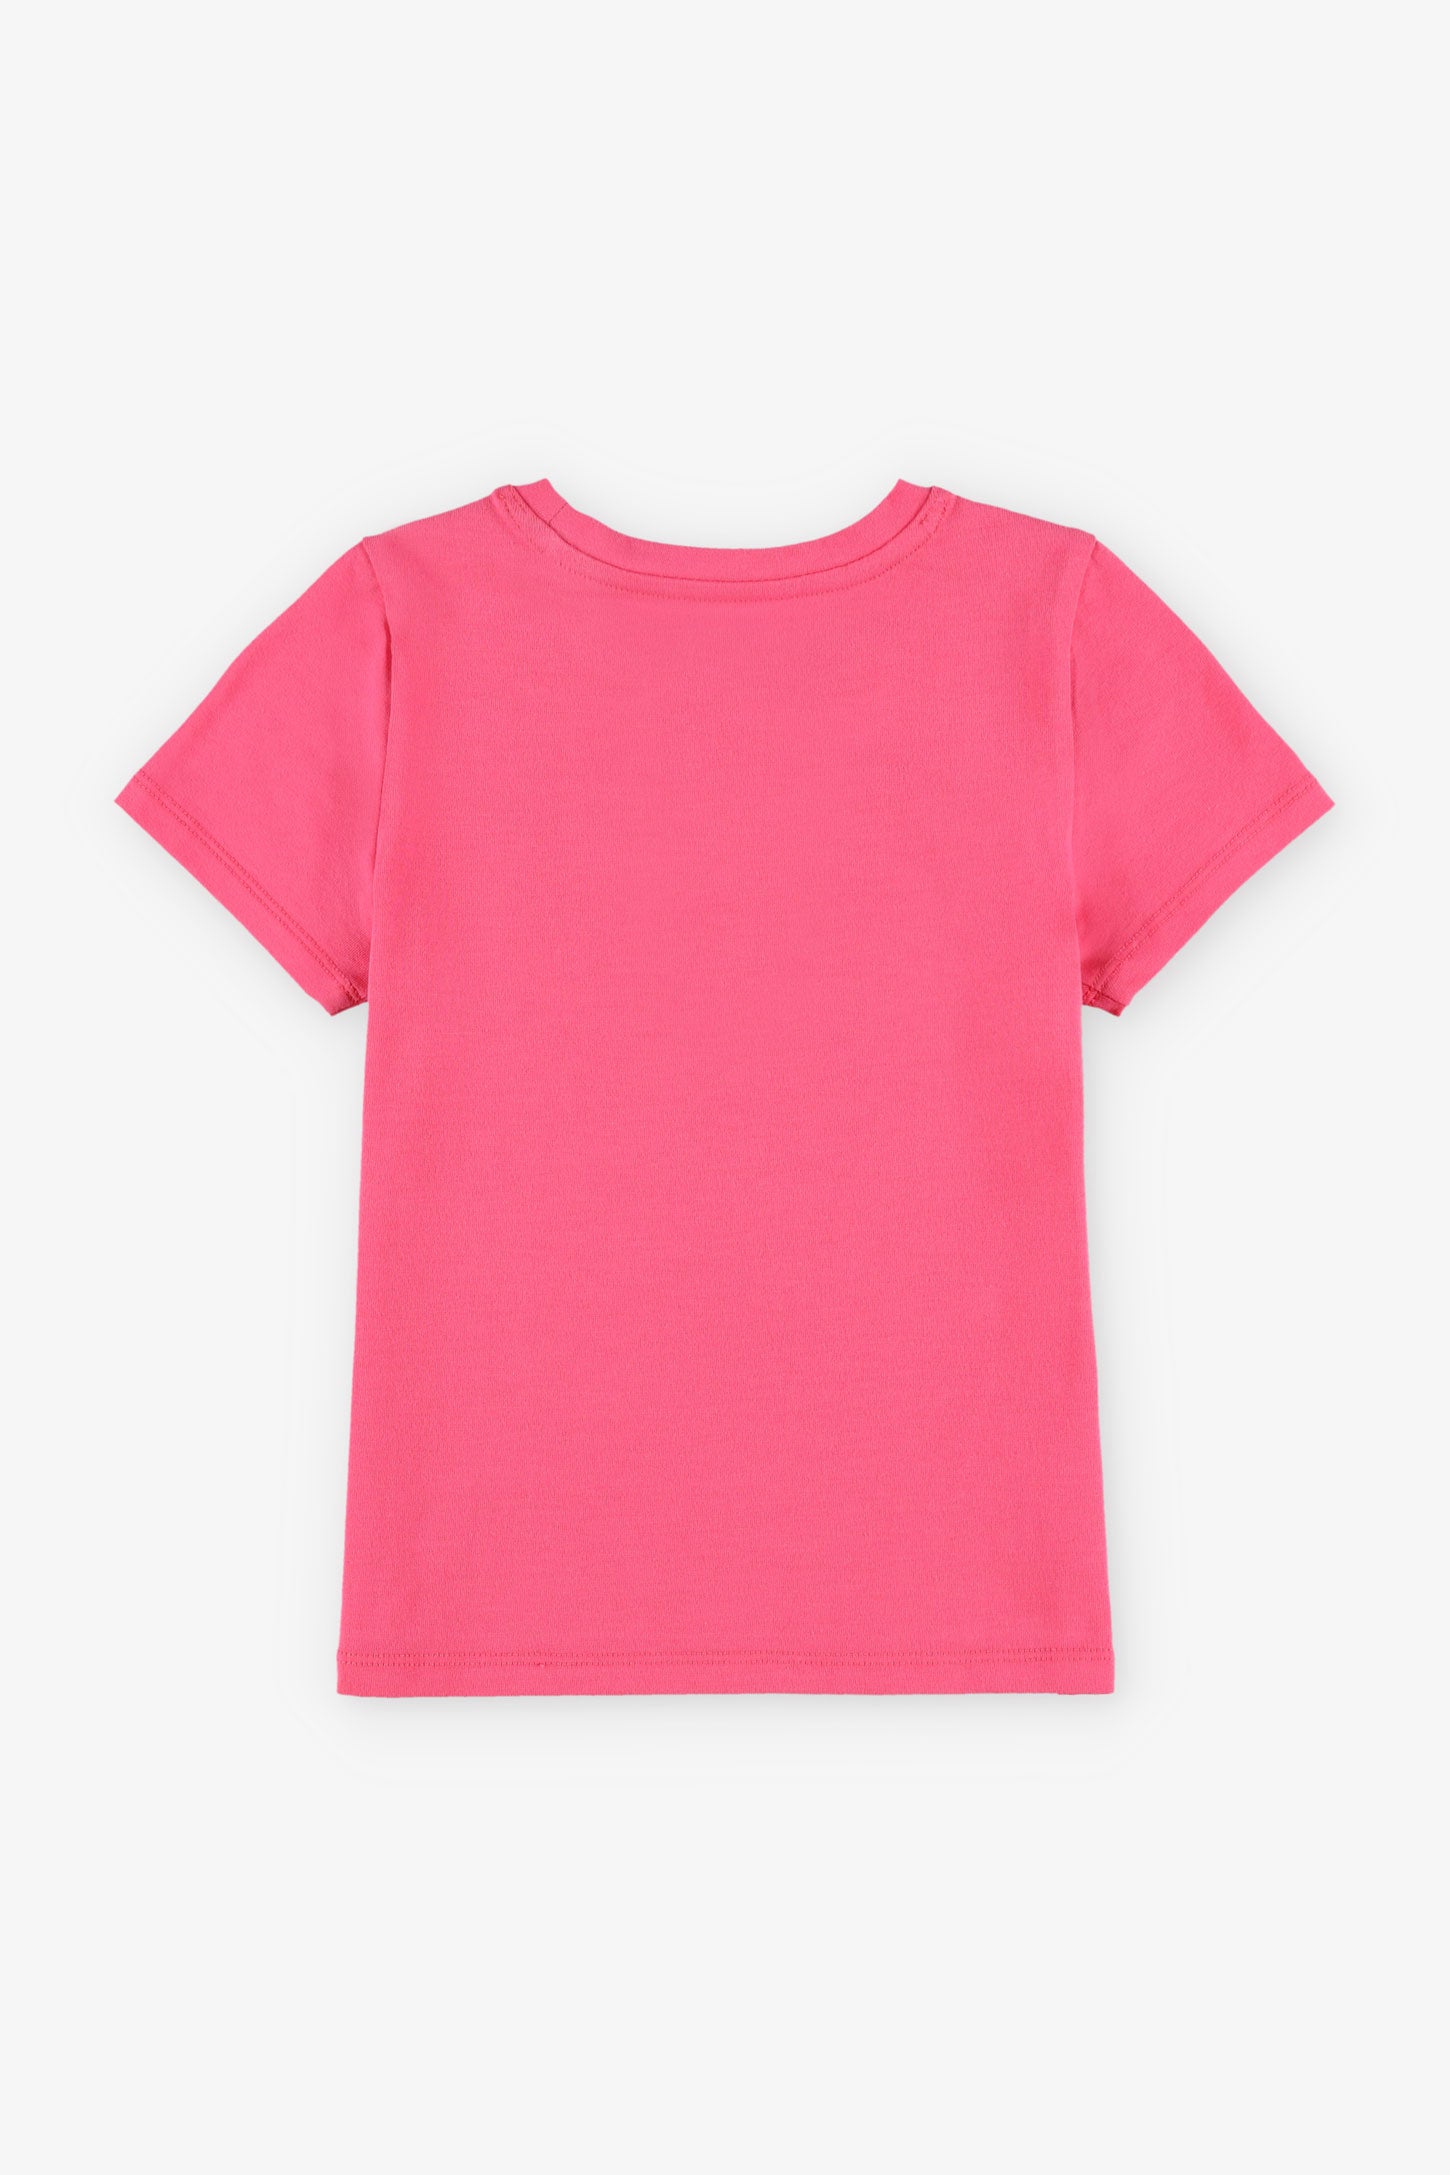 T-shirt col rond à poche en coton, 2/20$ - Enfant fille && ROSE